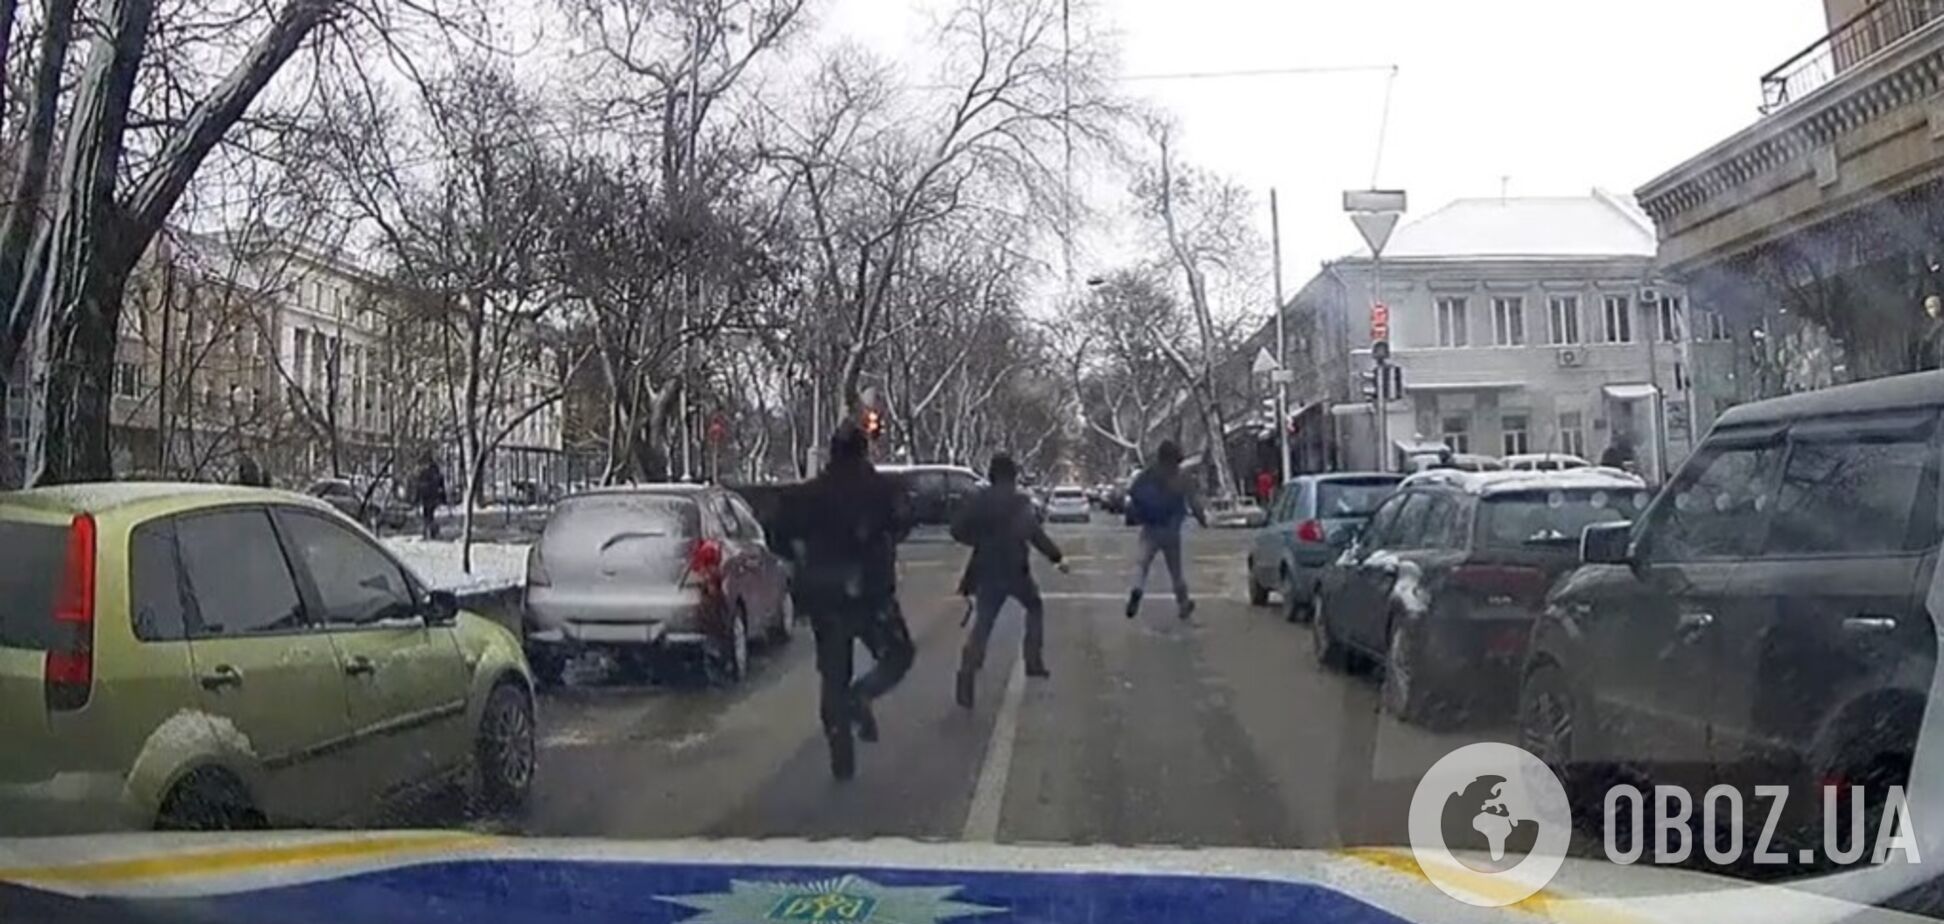 Уличного грабителя в Одессе настигла мгновенная карма